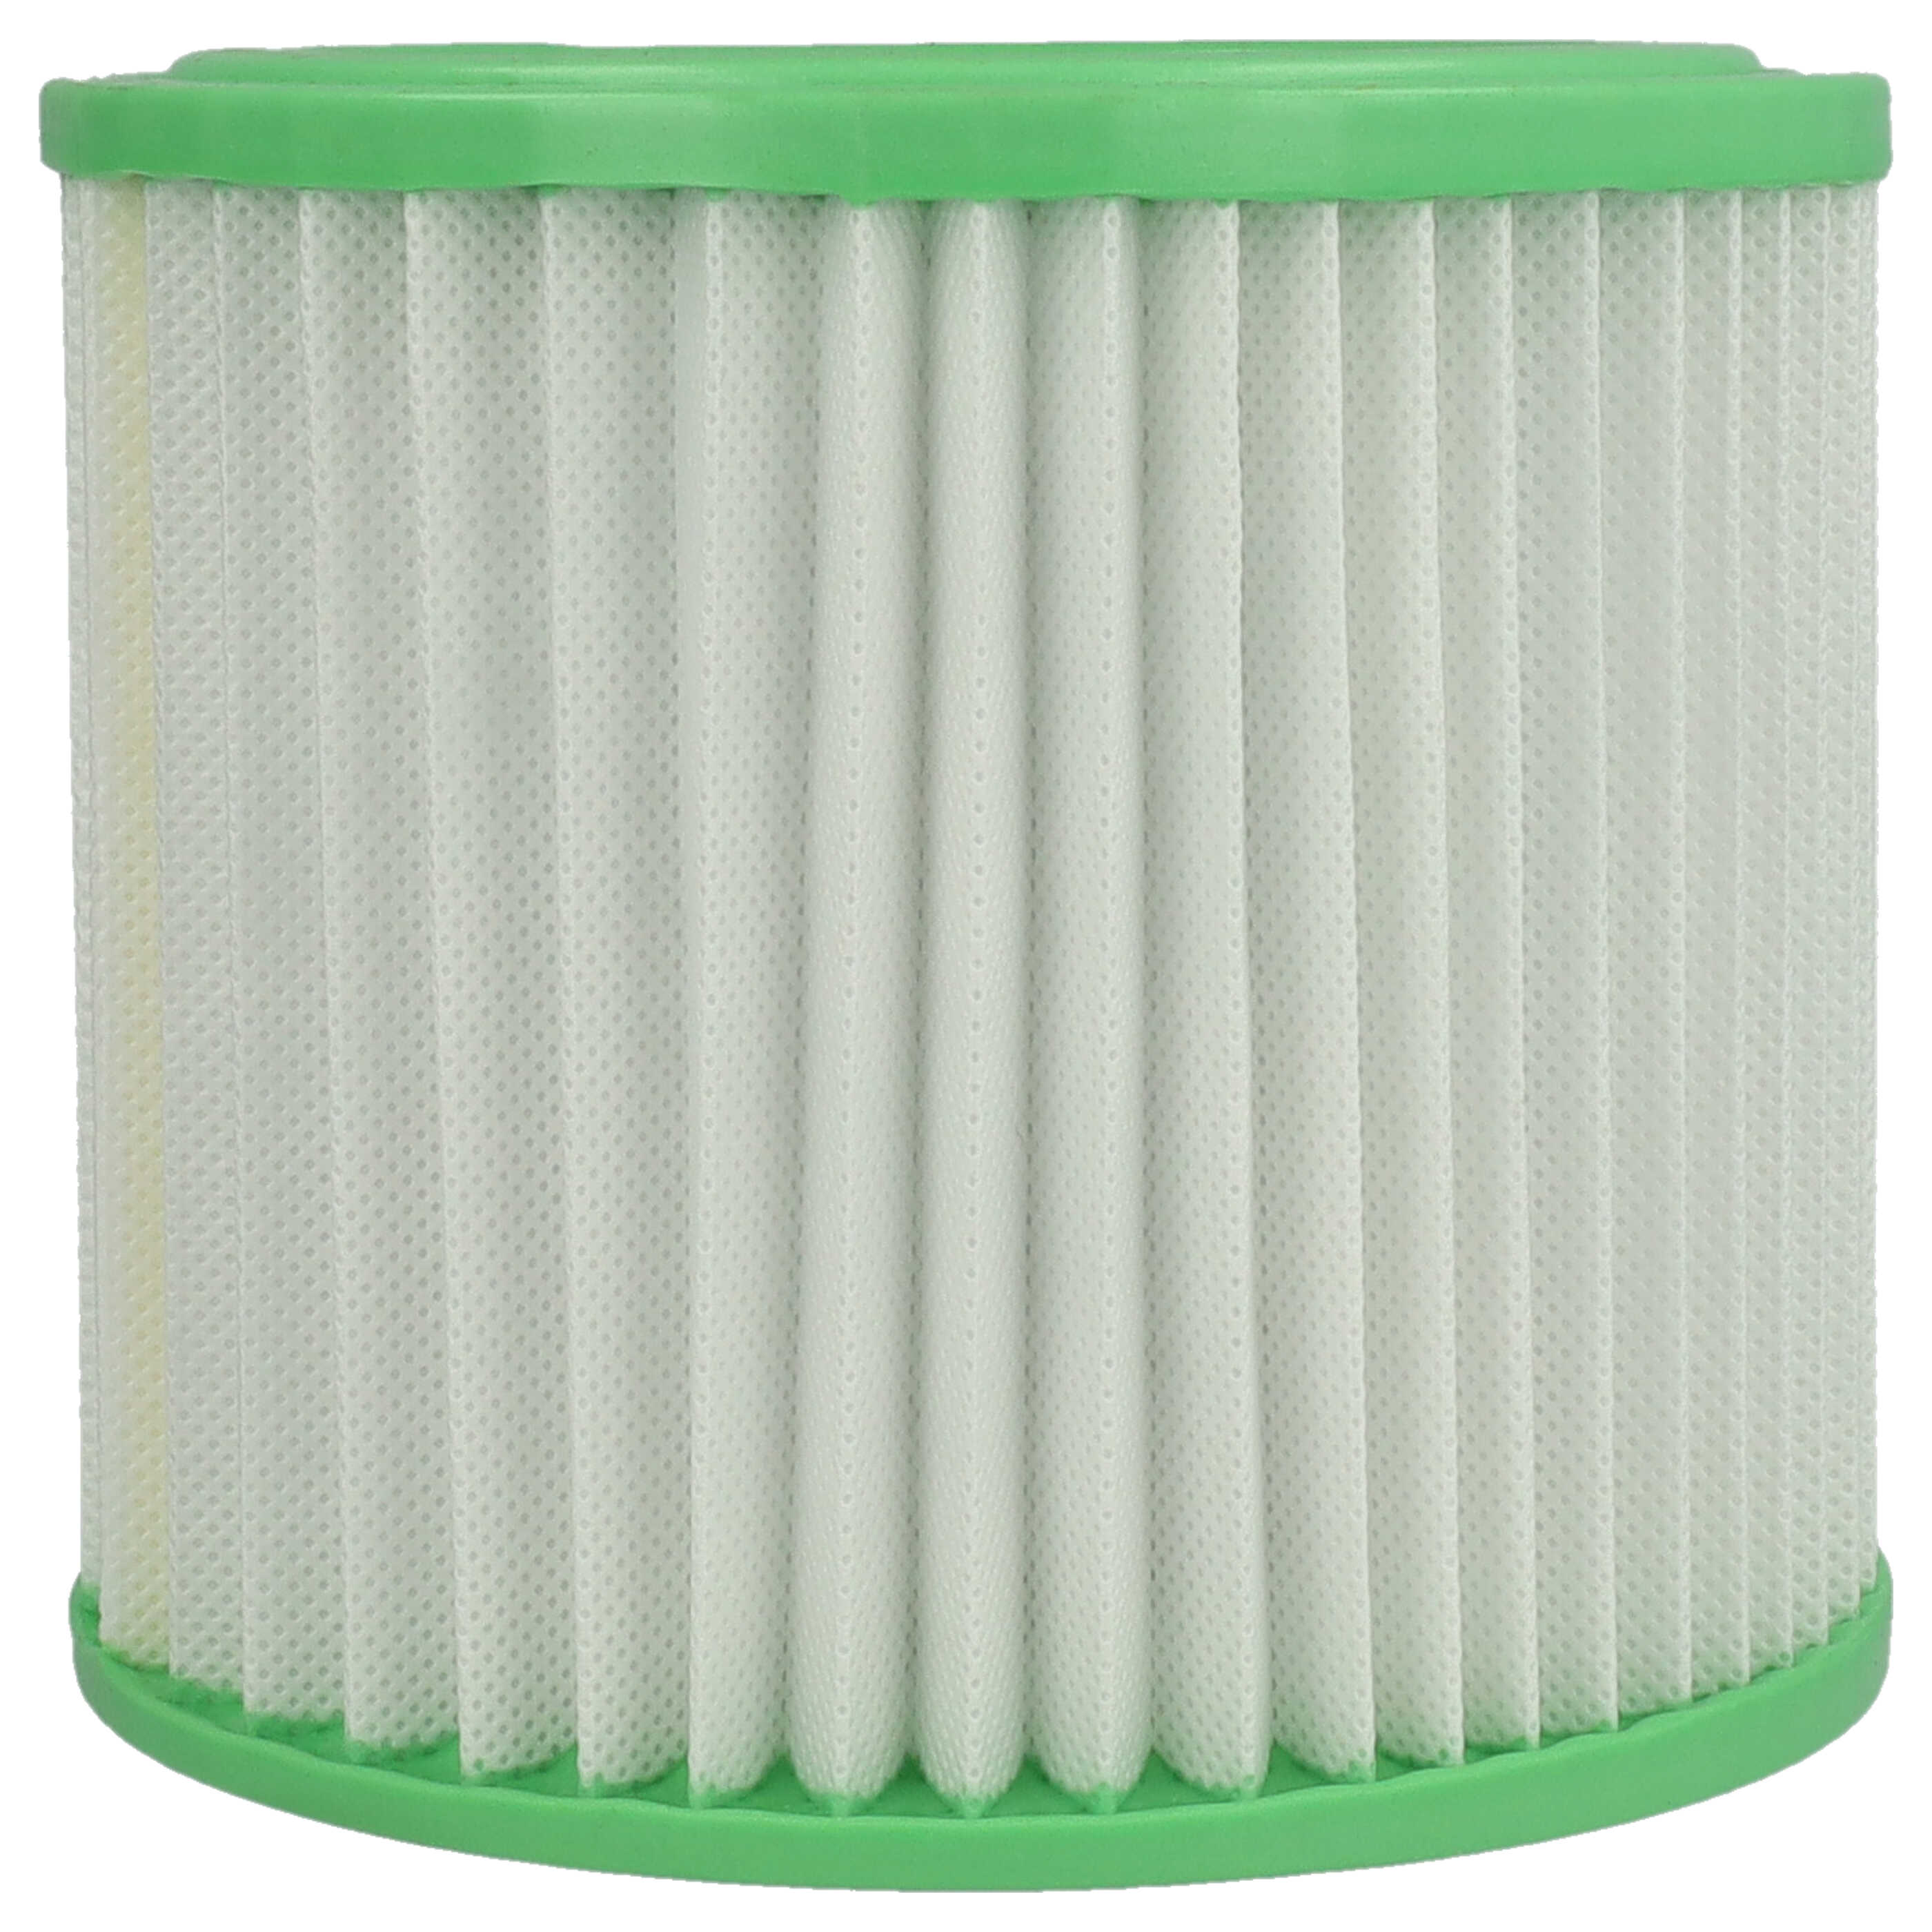 Filtr do odkurzacza do popiołu Parkside zamiennik Einhell 235163001013 - filtr fałdowany, biały / zielony